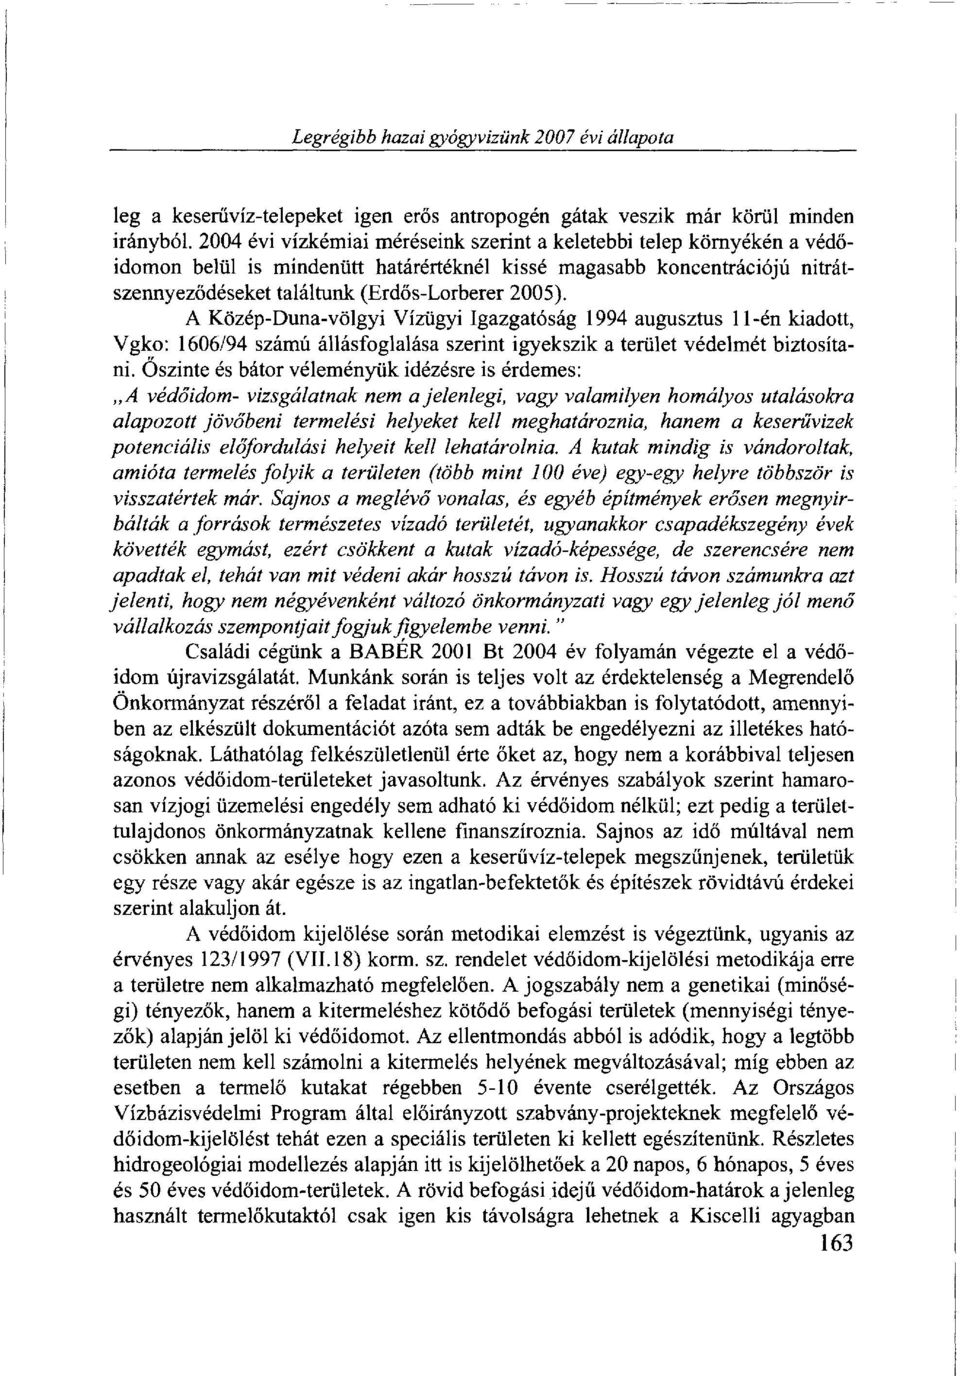 A Közép-Duna-völgyi Vízügyi Igazgatóság 1994 augusztus 11 -én kiadott, Vgko: 1606/94 számú állásfoglalása szerint igyekszik a terület védelmét biztosítani.